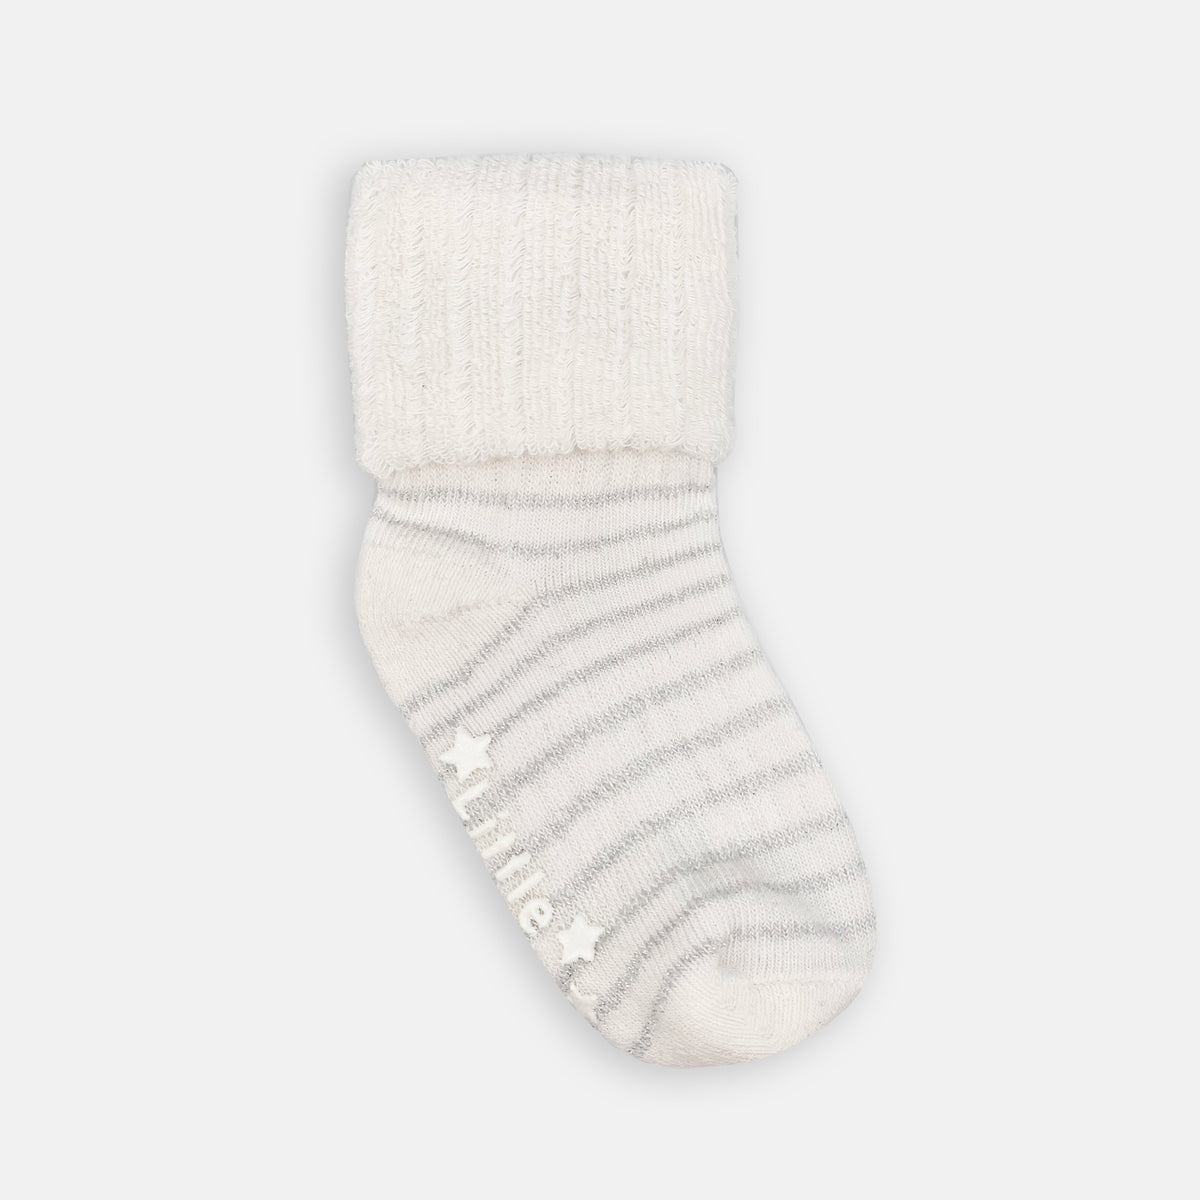 Cosy Stay-On Non-Slip Baby Socks in Sparkle Stripe